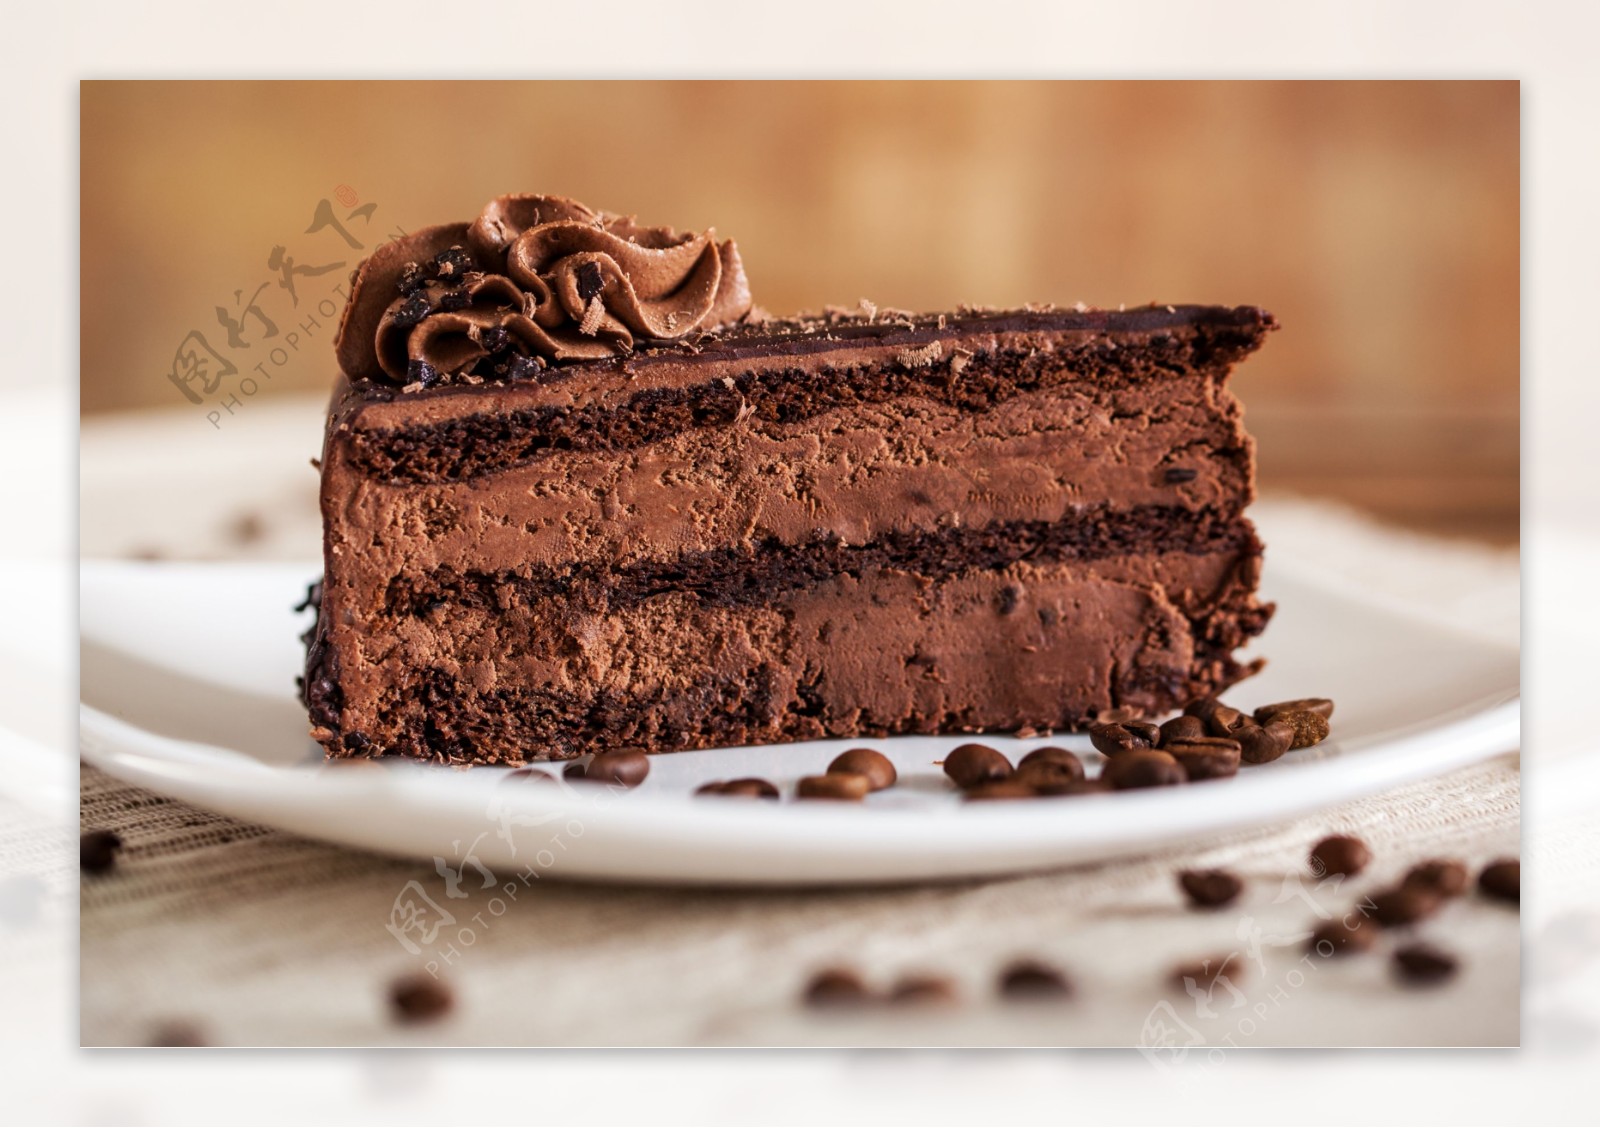 美味美食巧克力蛋糕图片